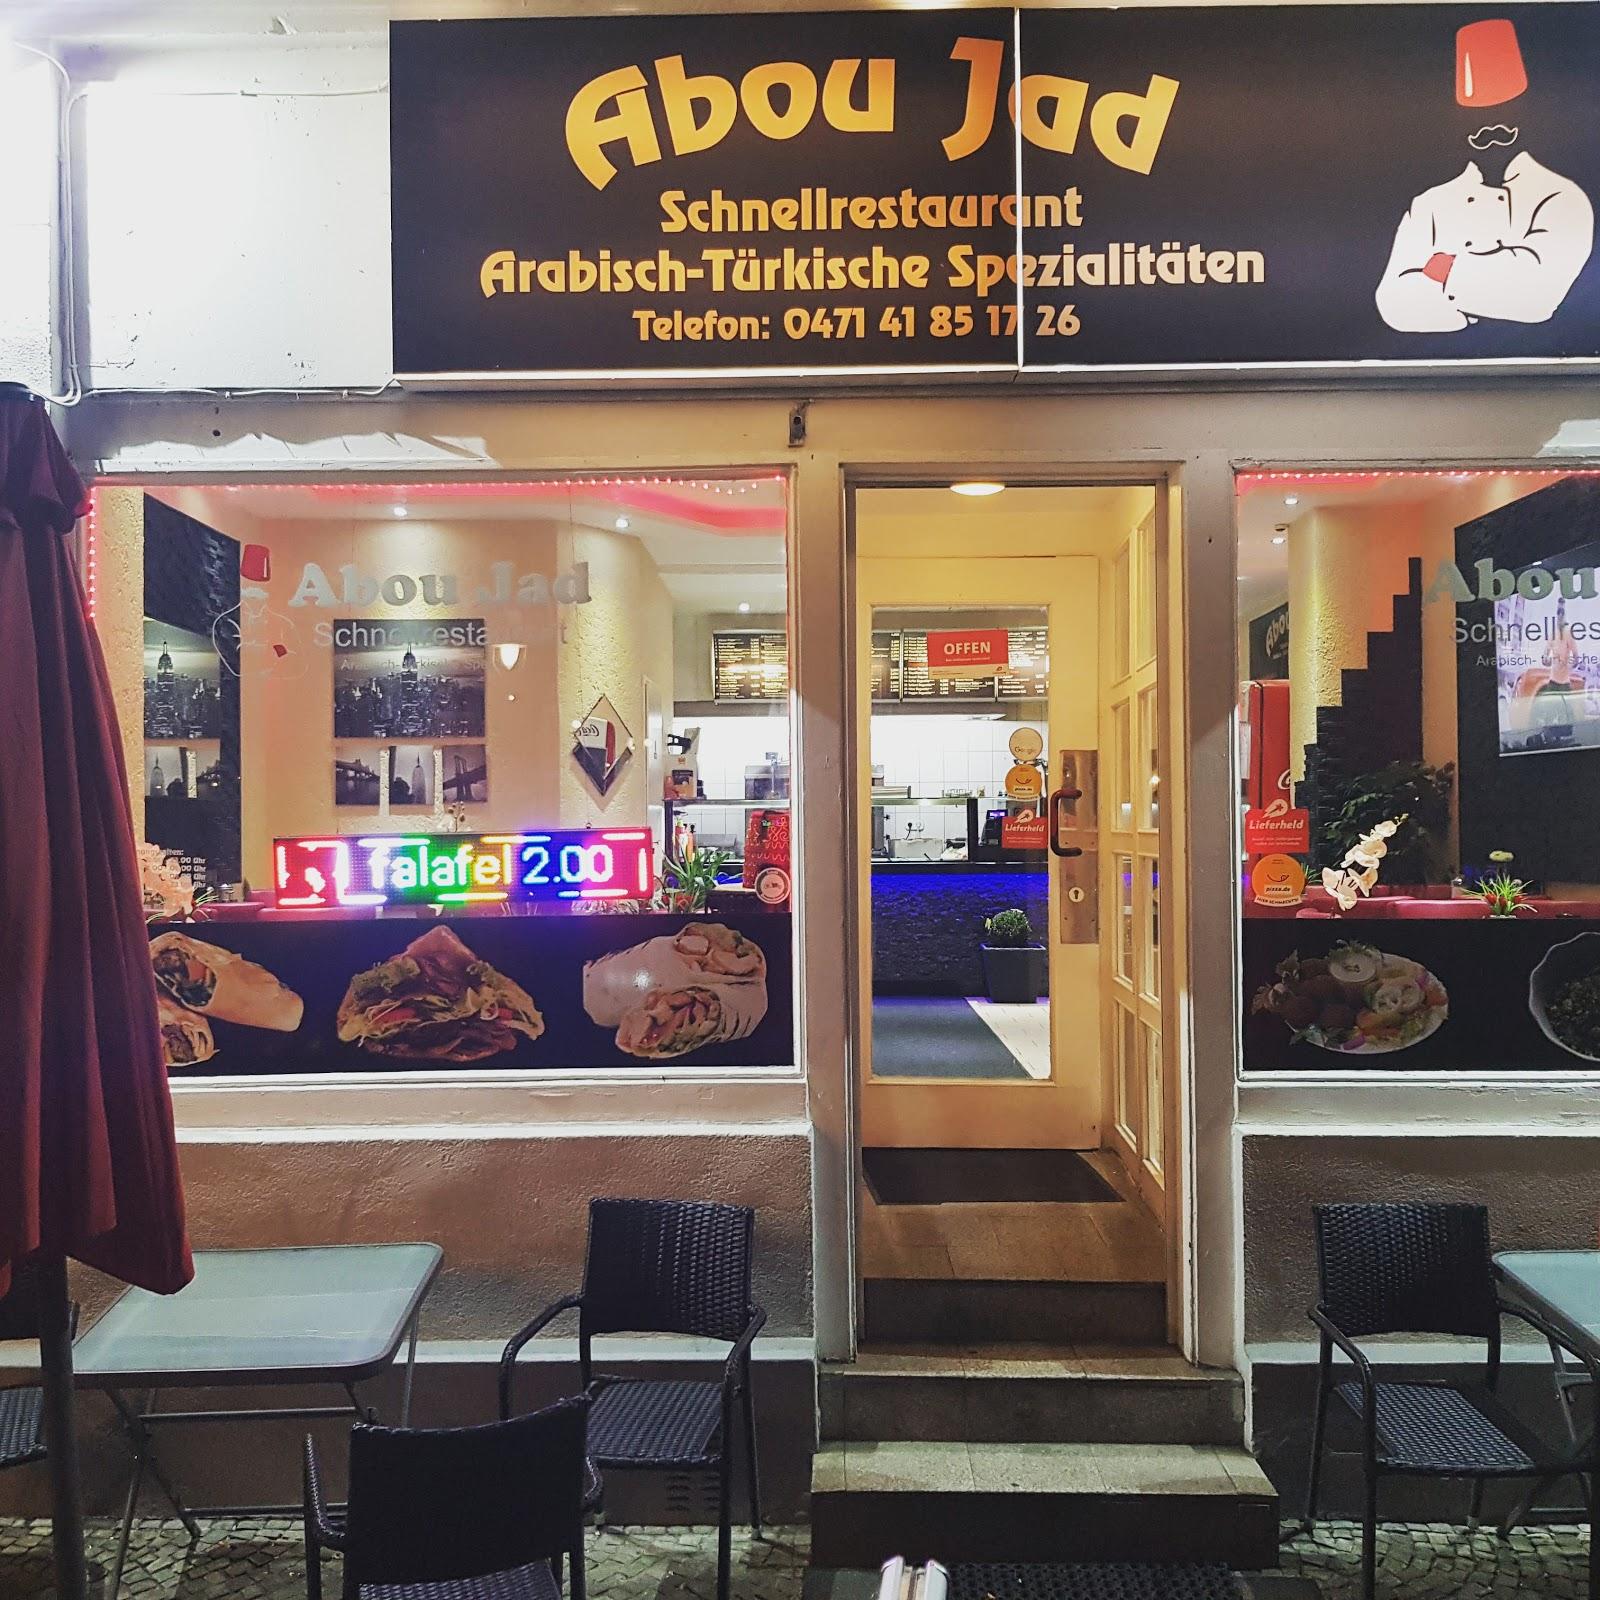 Restaurant "Abou Jad Schnellrestaurant" in Bremerhaven